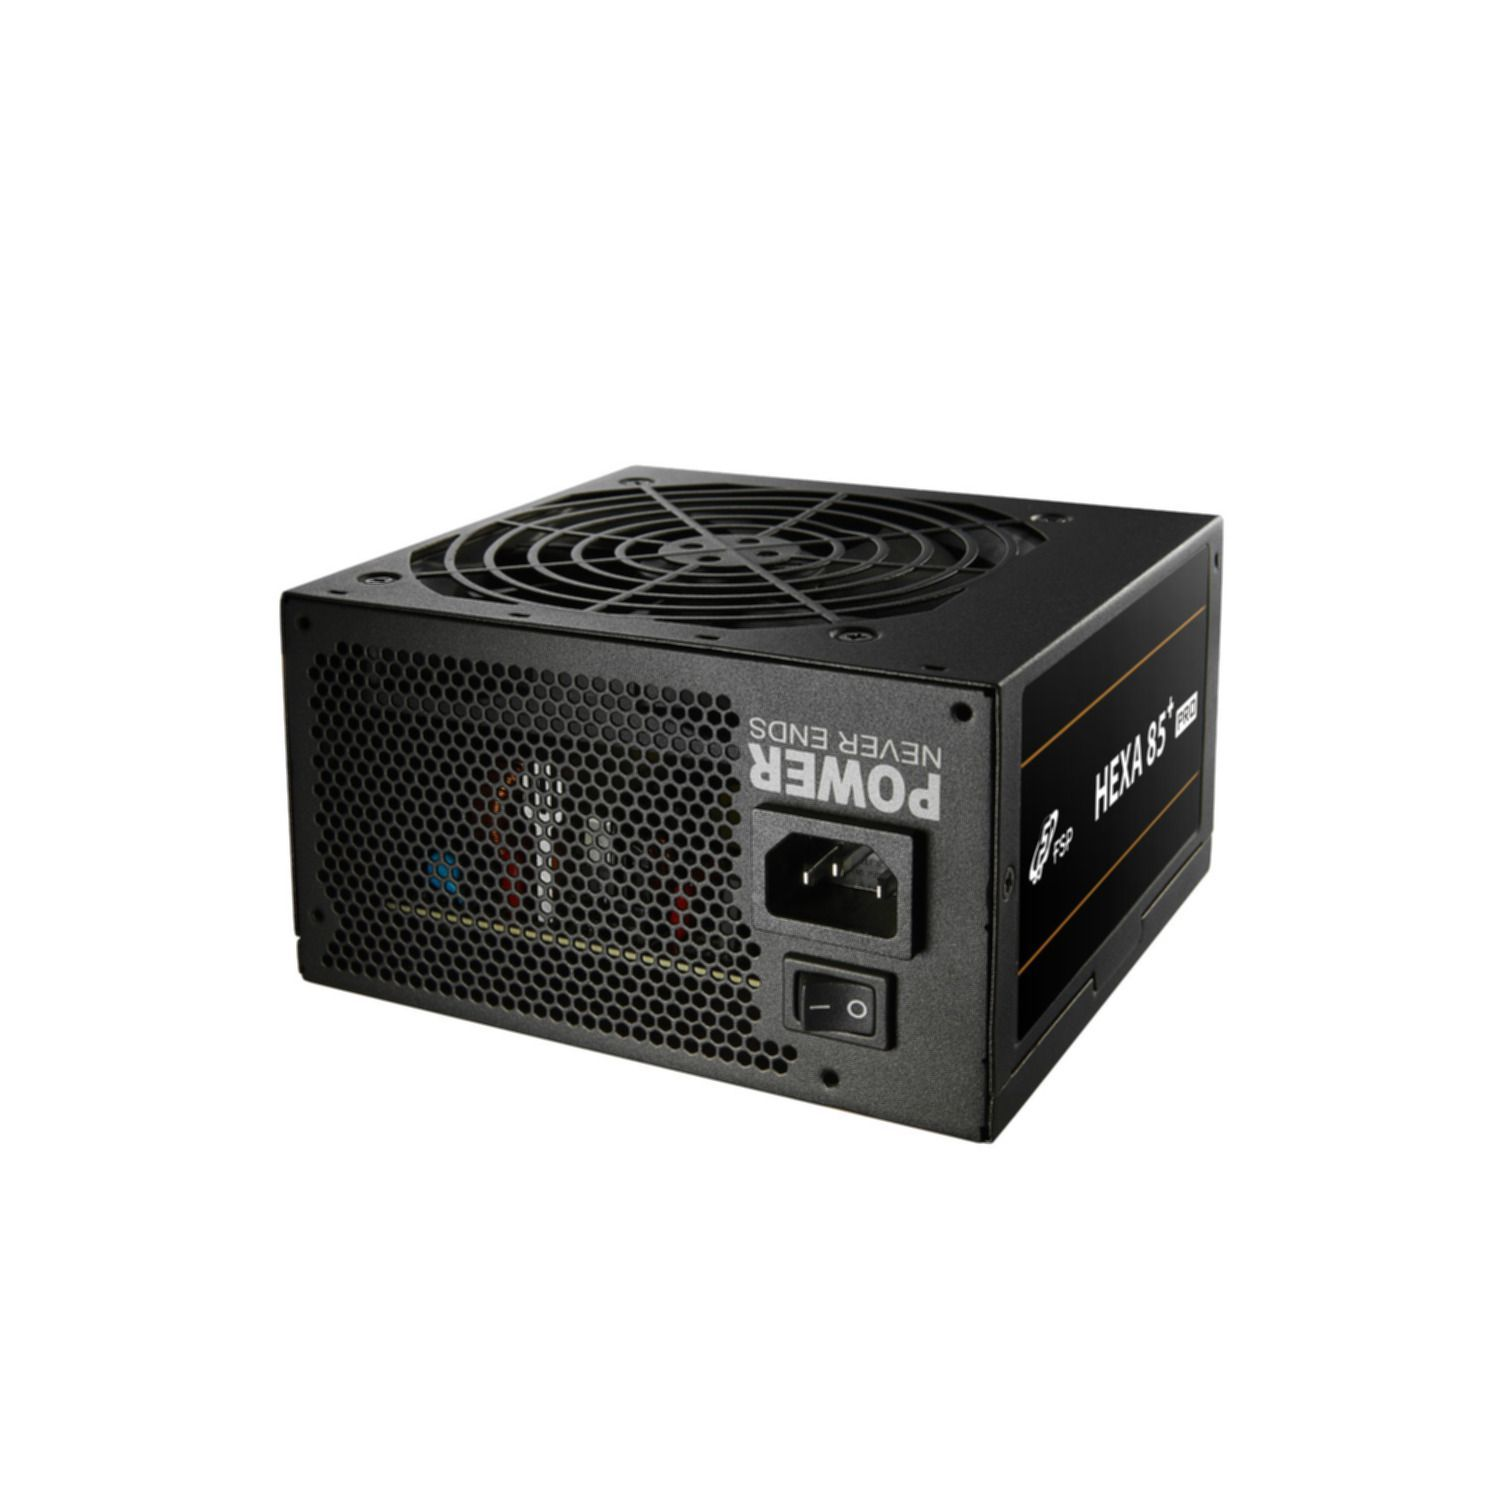 350 HEXA FORTRON PRO SOURCE 85+ Watt PC Netzteil